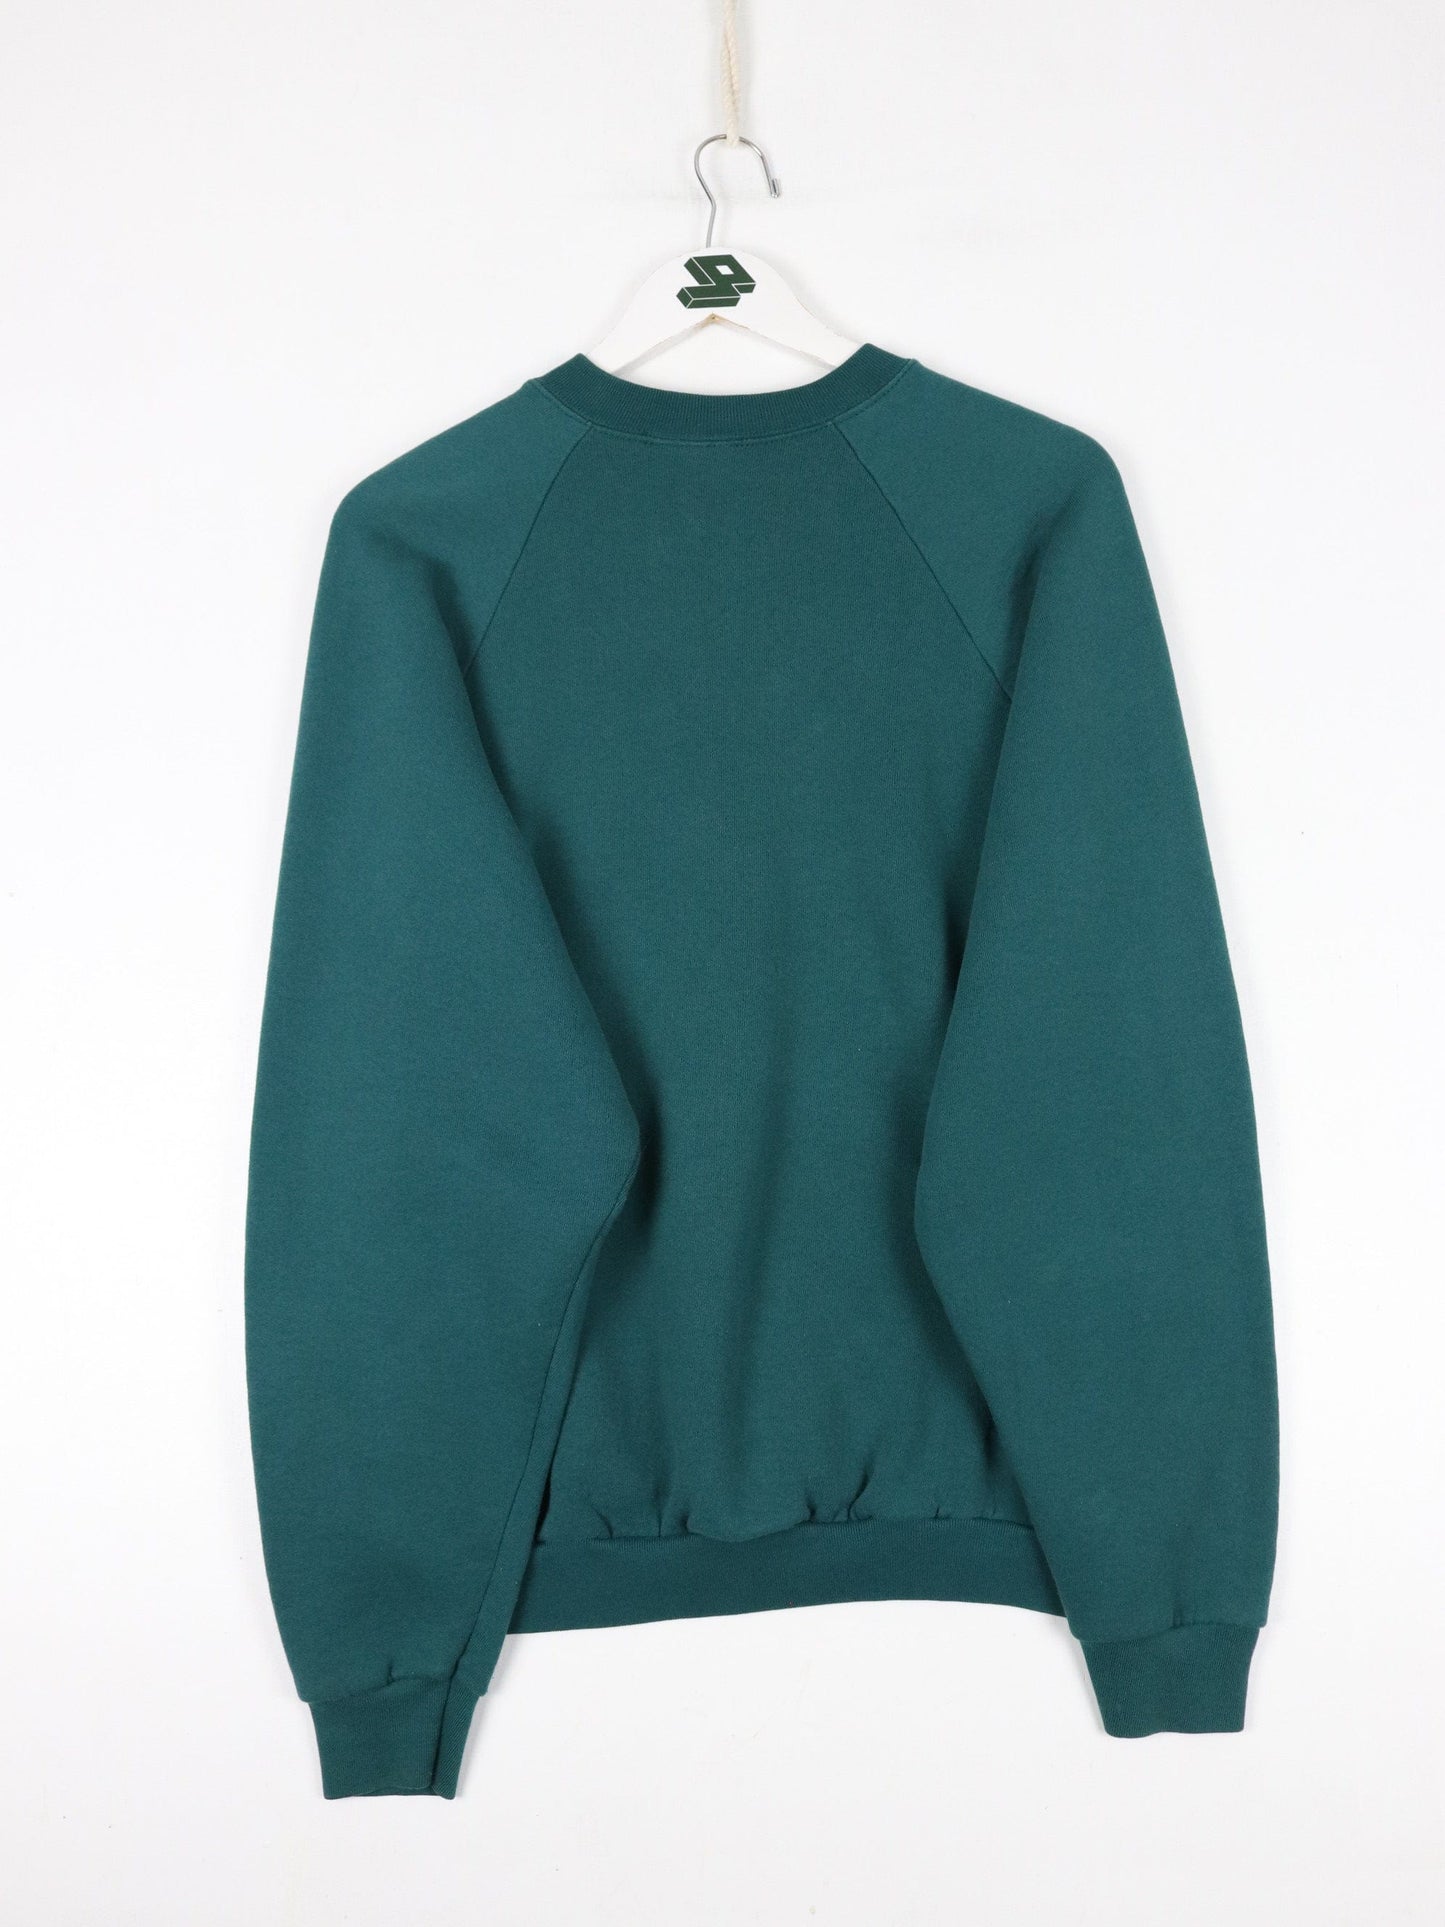 Other Sweatshirts & Hoodies Vintage Fruit of the Loom Sweatshirt Fits Mens Large Green Black Sweater